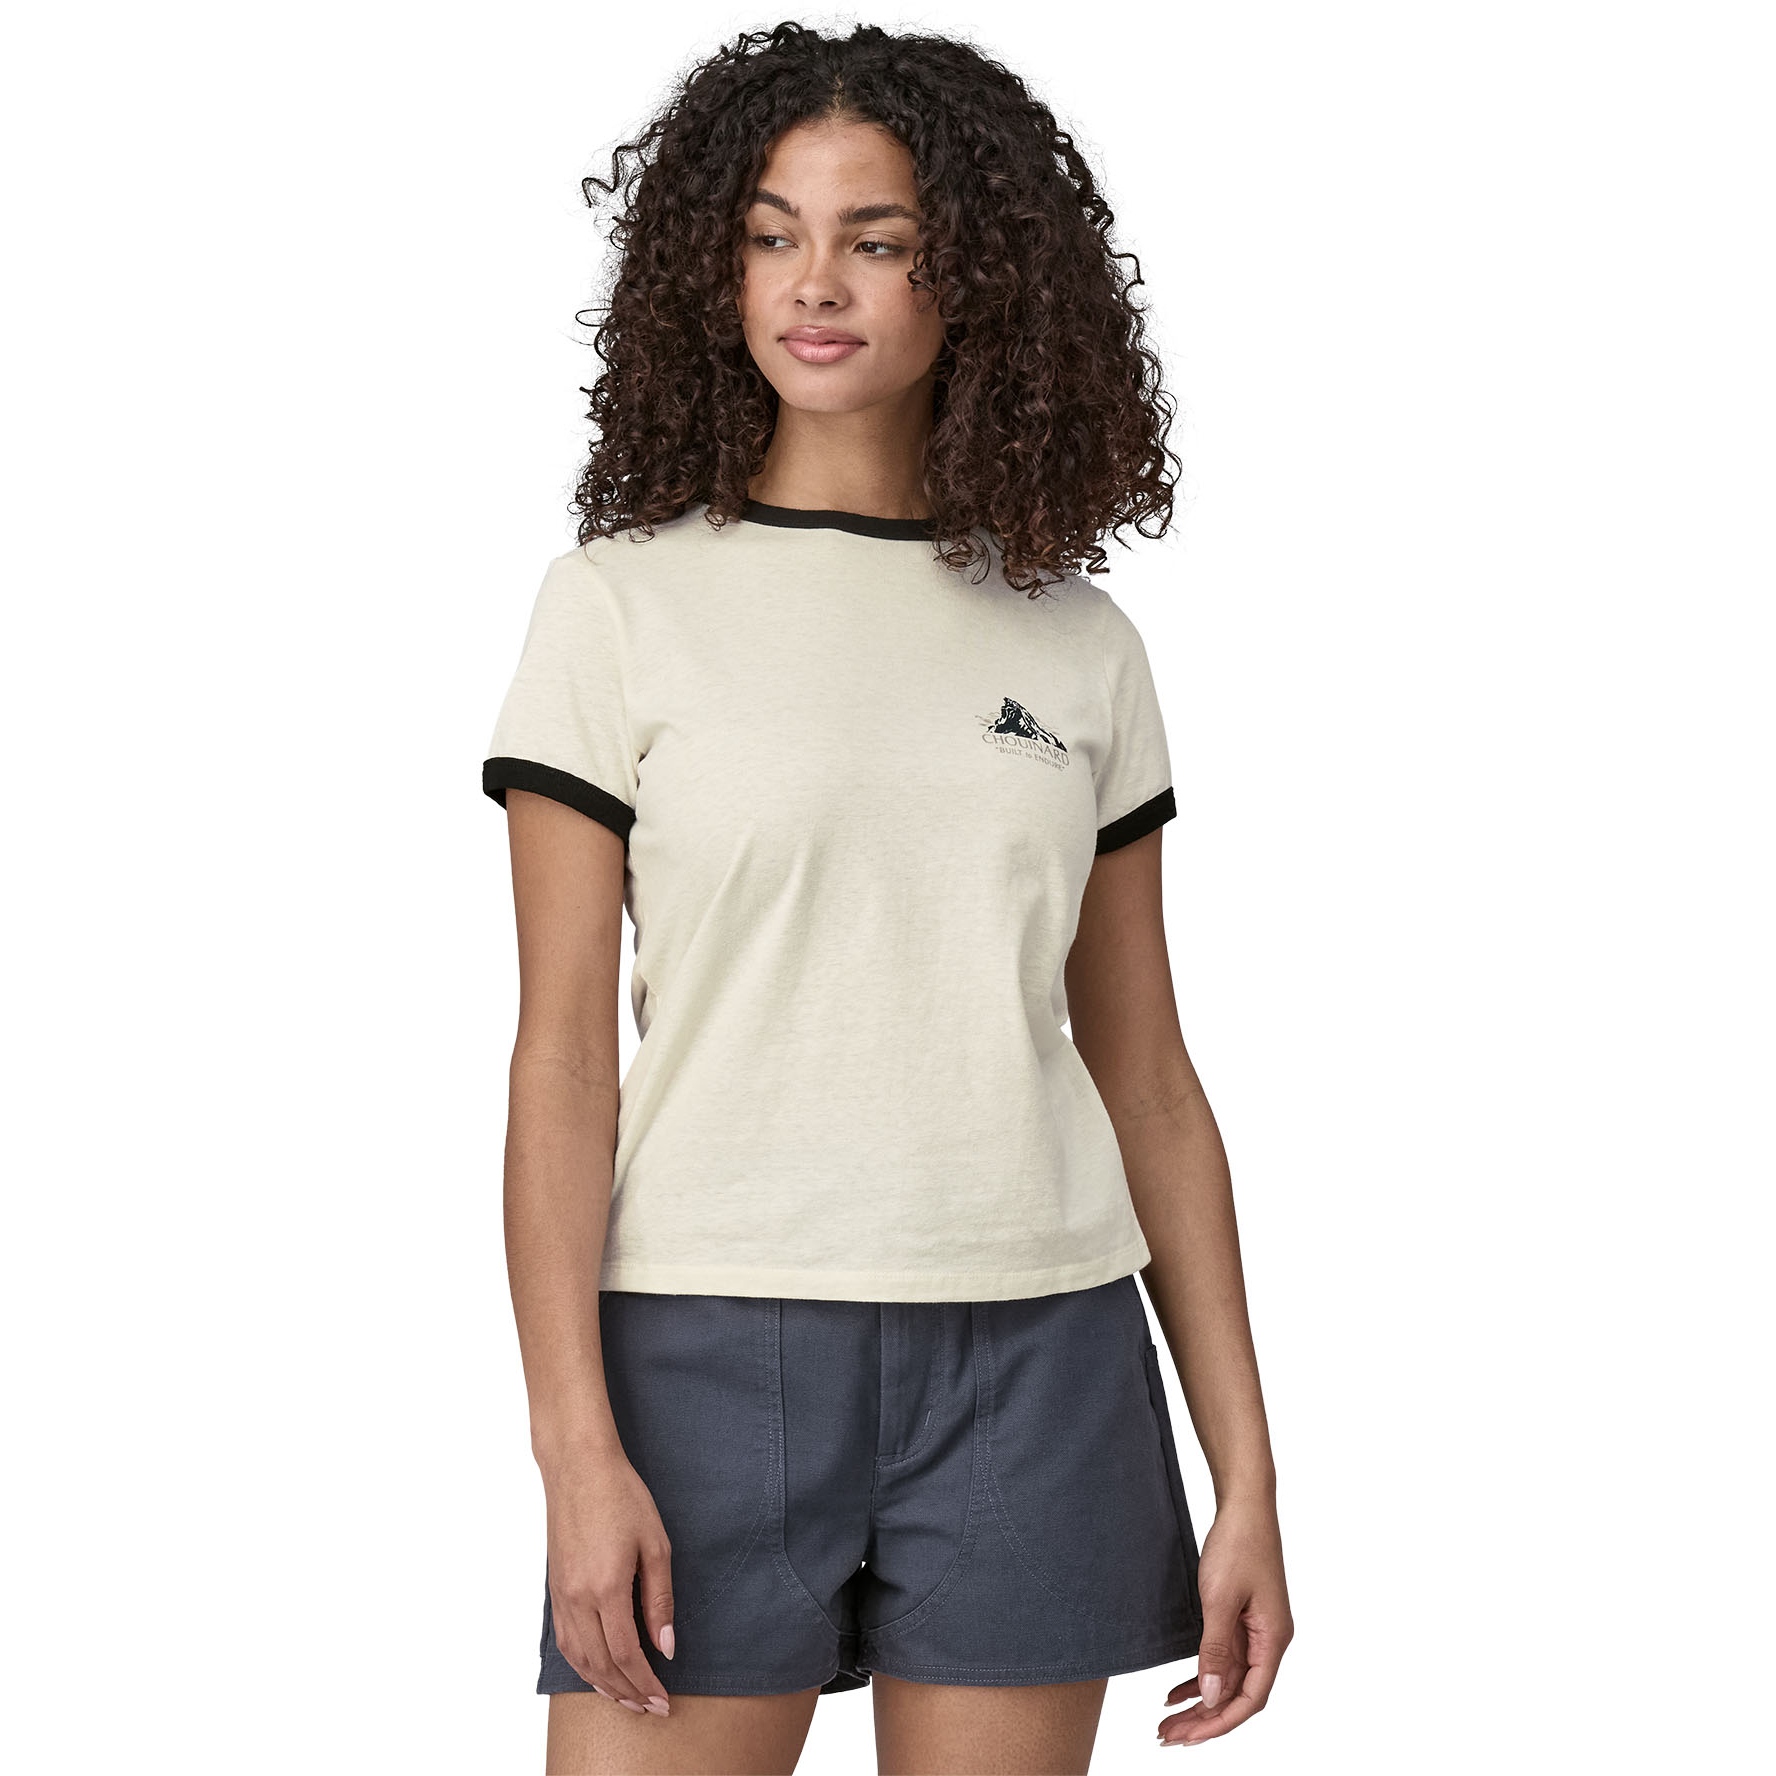 Produktbild von Patagonia Chouinard Crest Ringer Responsibili-Tee T-Shirt Damen - Birch White